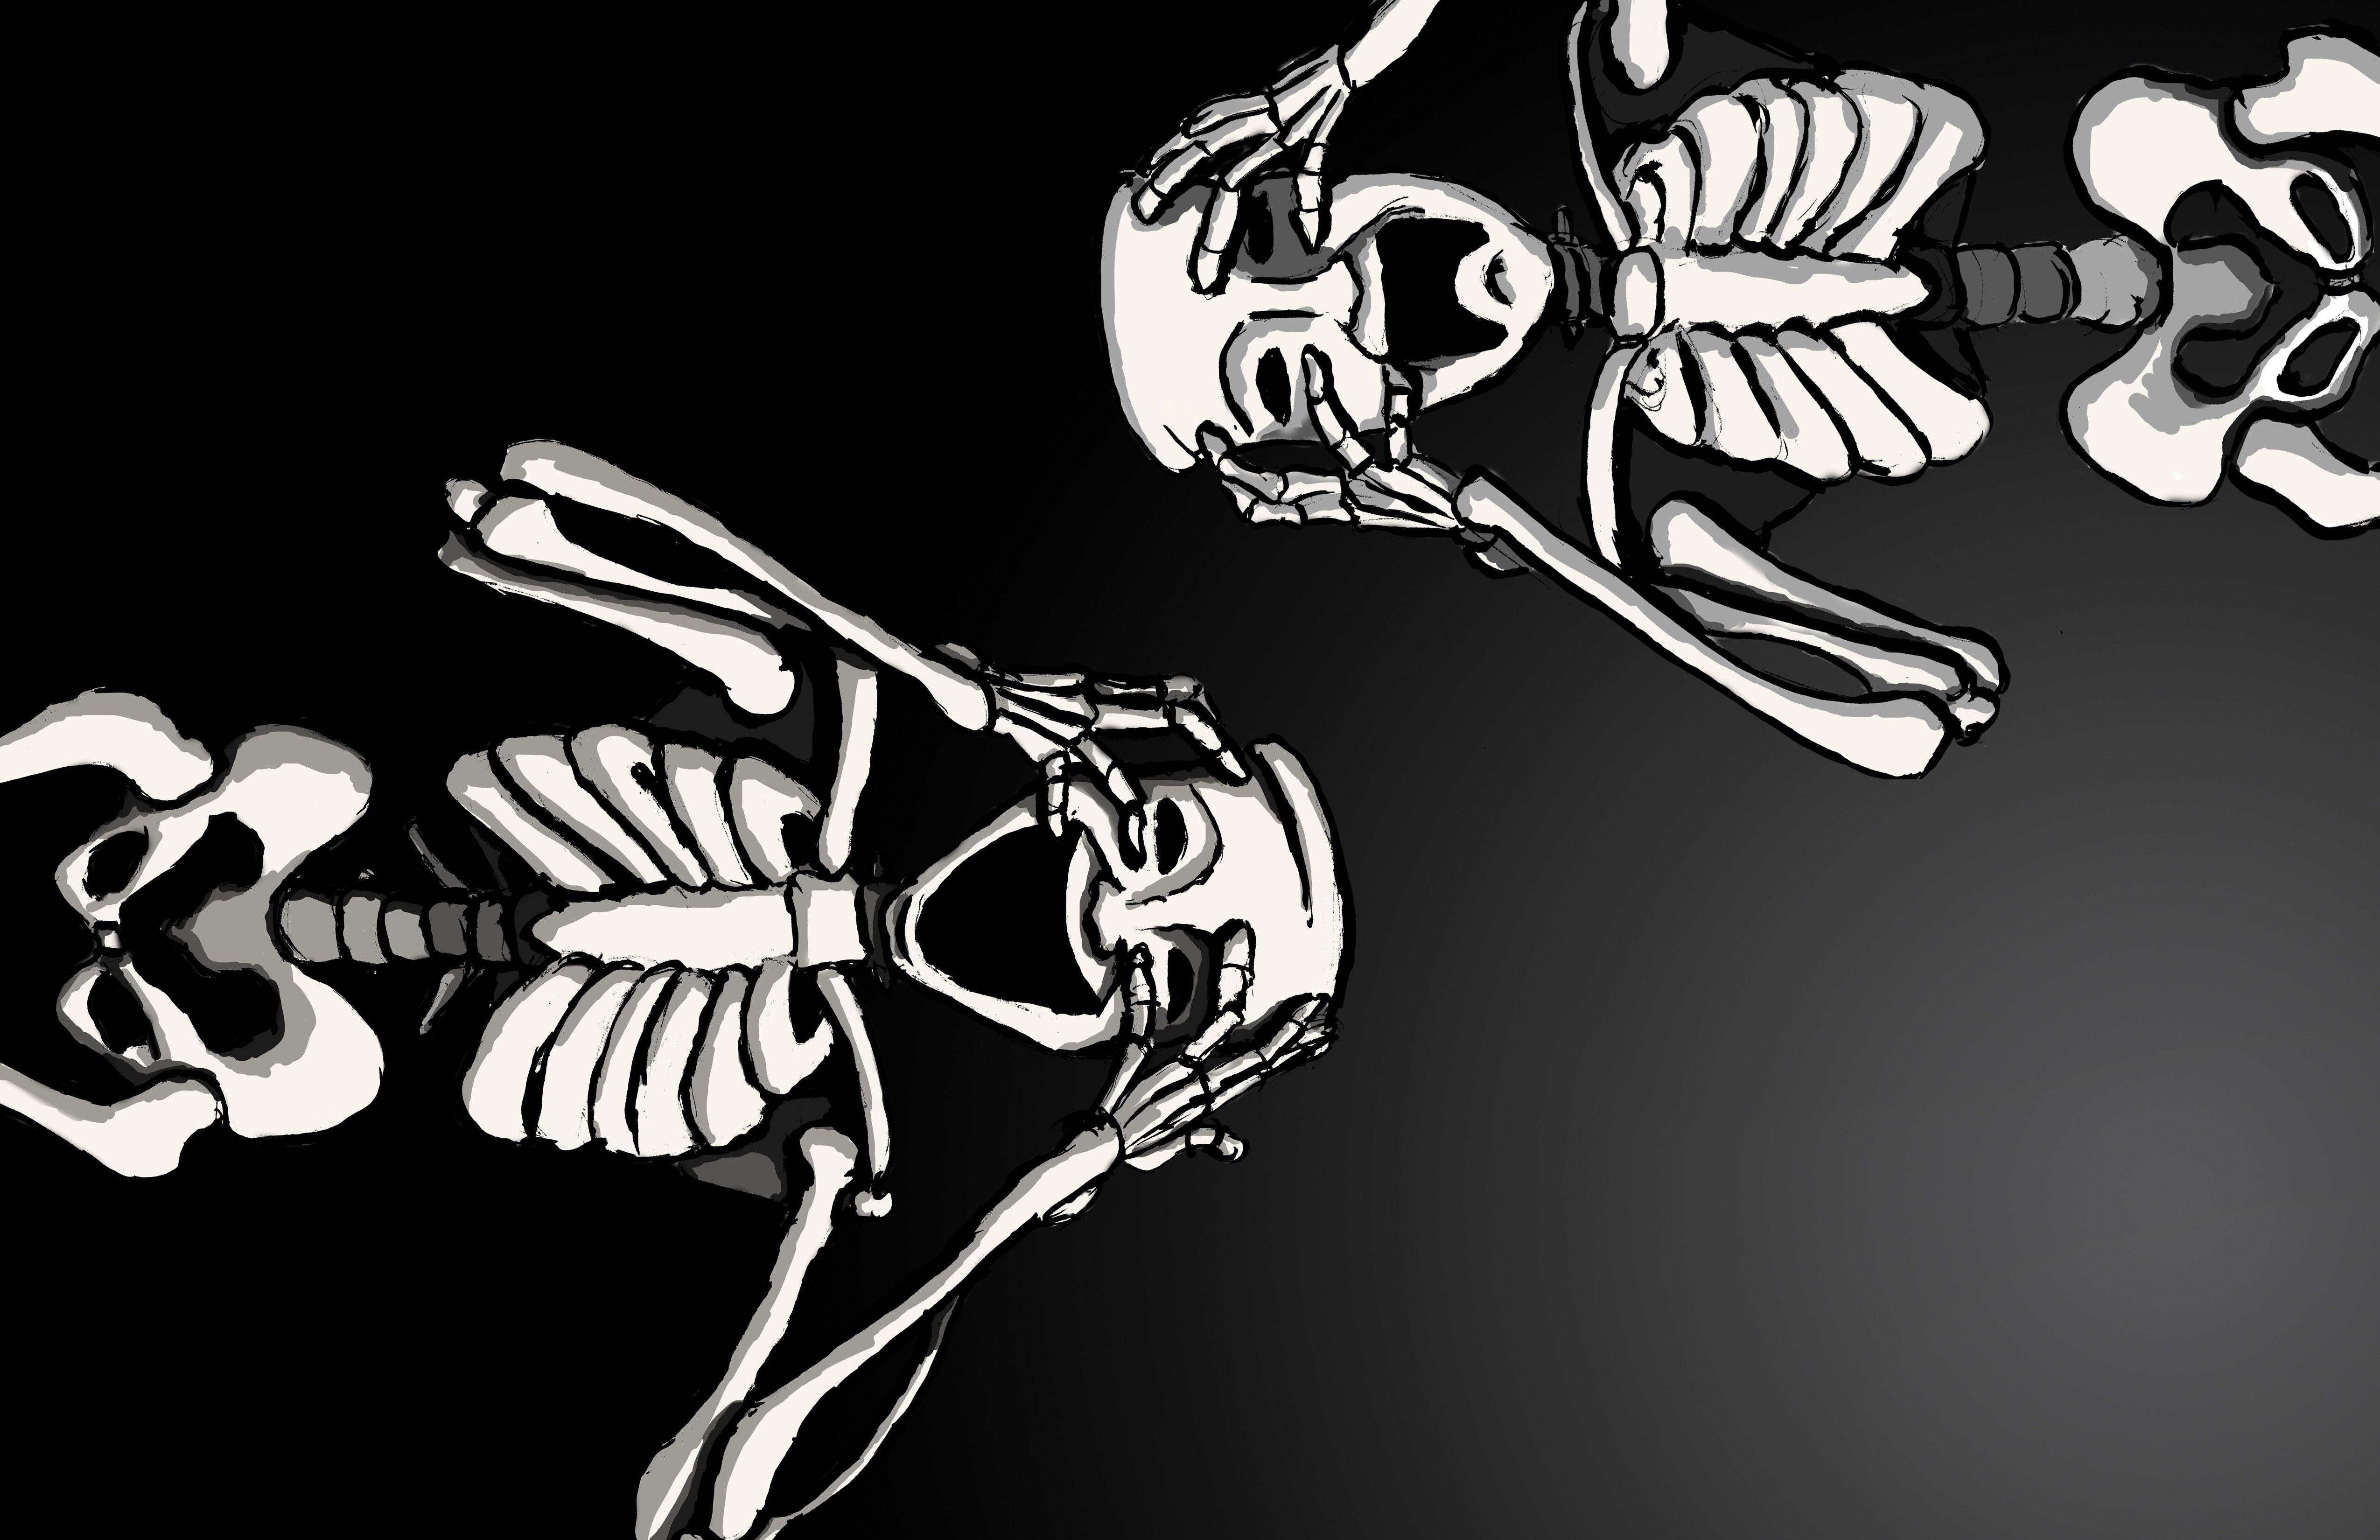 Скачать обои бесплатно Скелет, Тьма, Ужастик, Ползающий, Страшные, Пугающий, Хеллоуин картинка на рабочий стол ПК